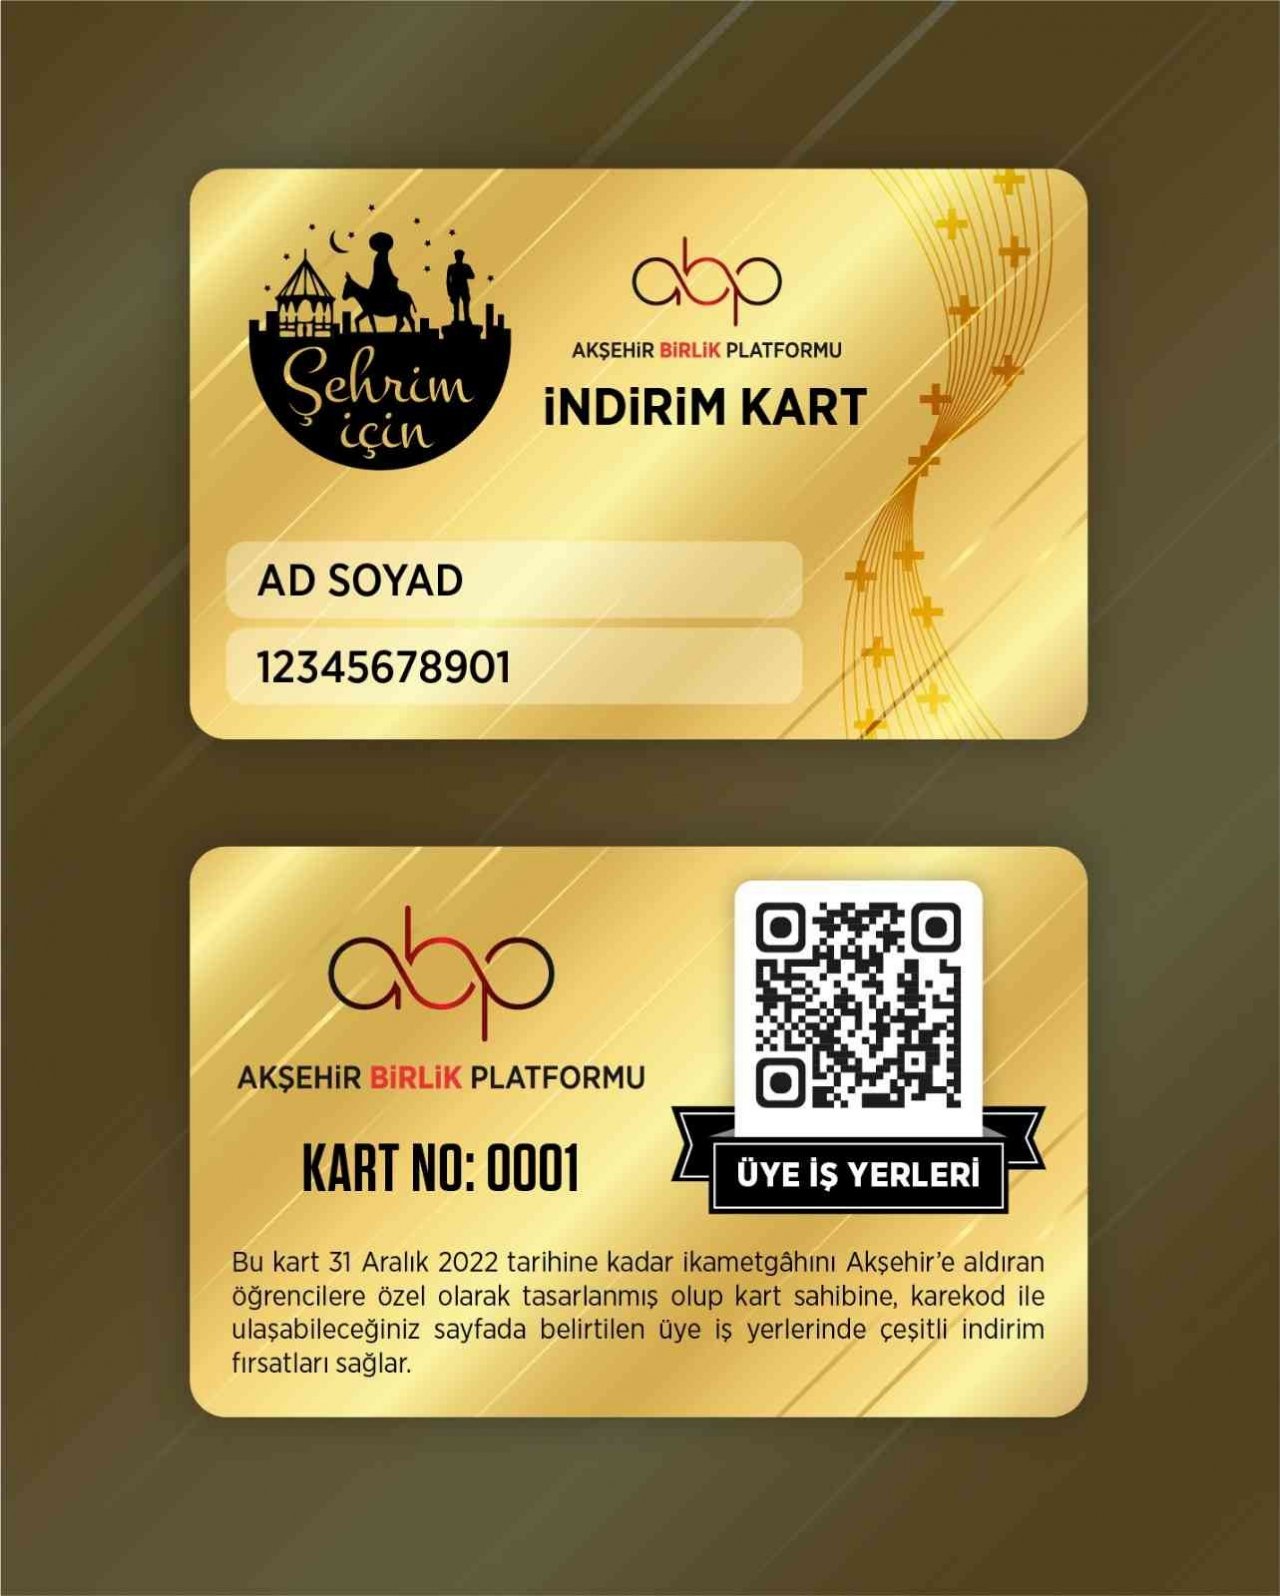 Akşehir’de hedef 100 bin nüfus kampanyası için indirim kartı